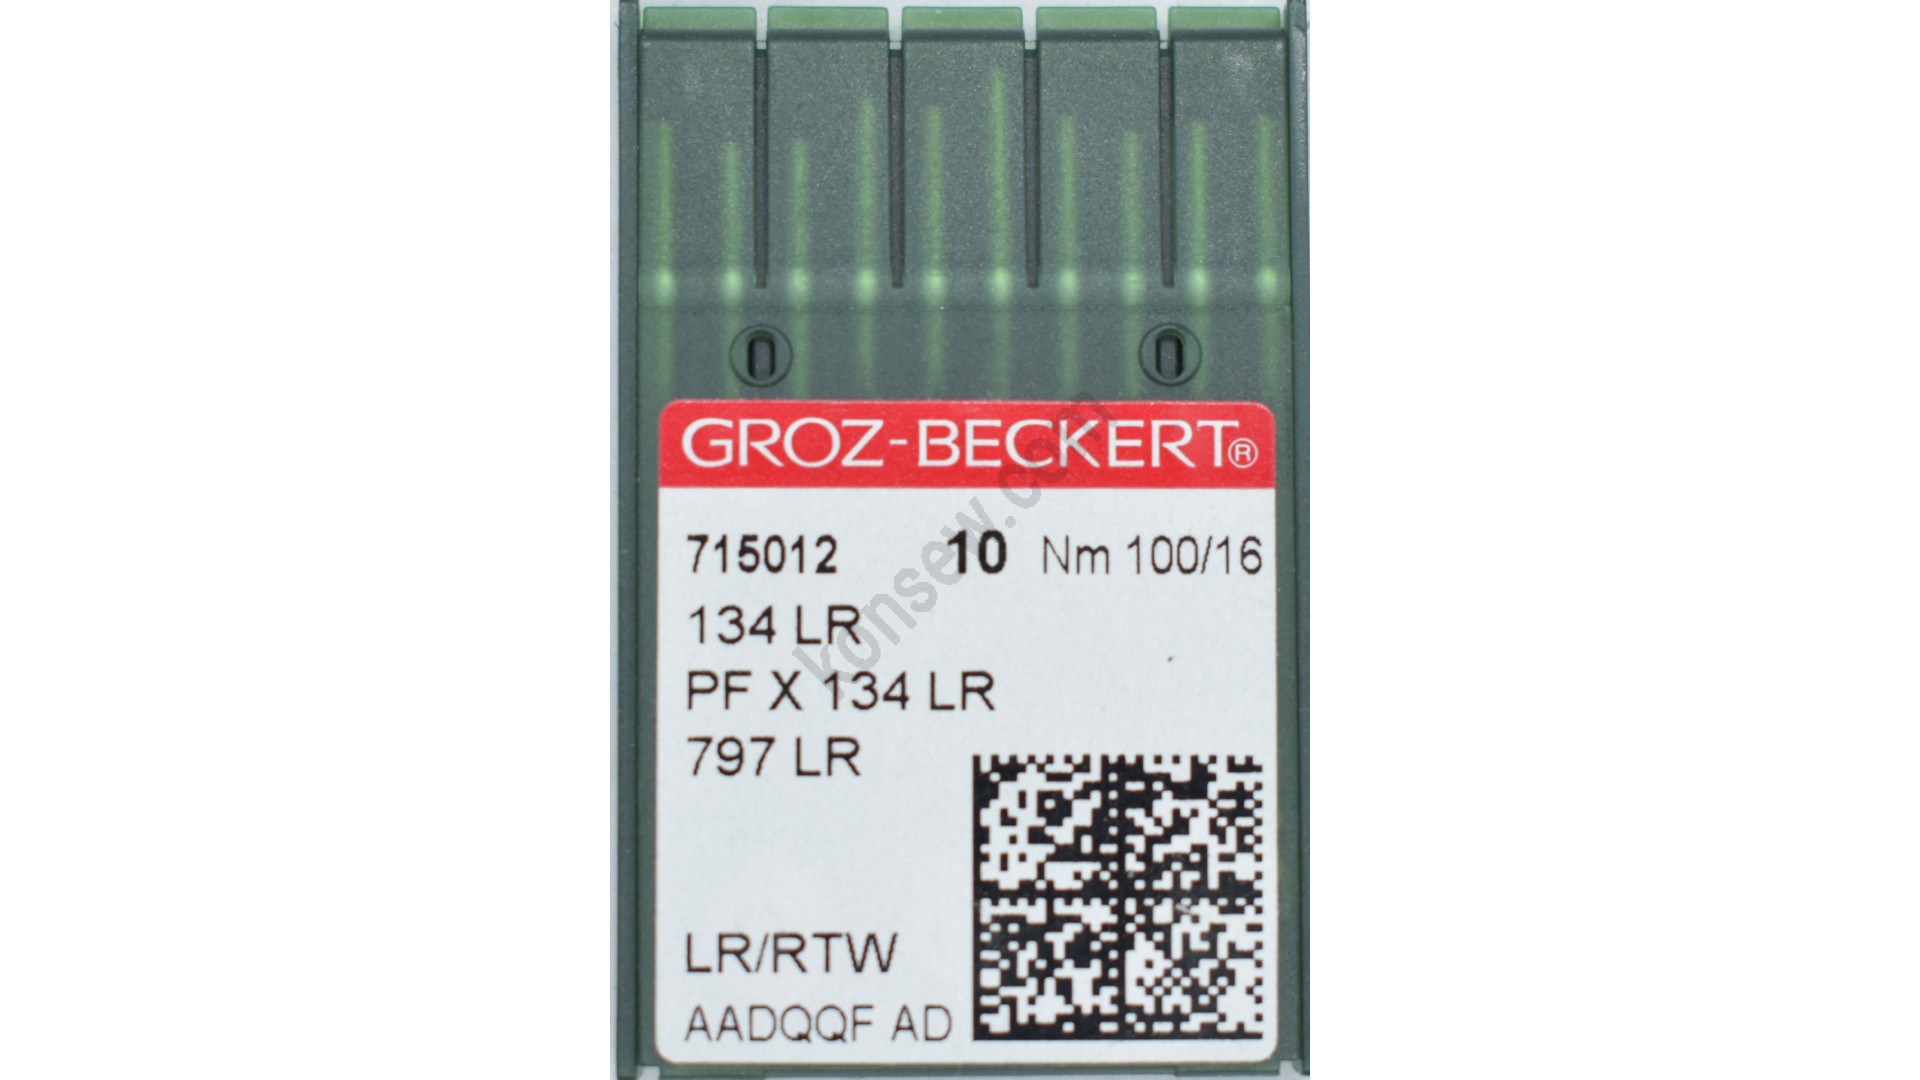 Leder Nadeln 134 LR GROZ-BECKERT 100/16 Maschinennadel PF X 134 LR OVP 